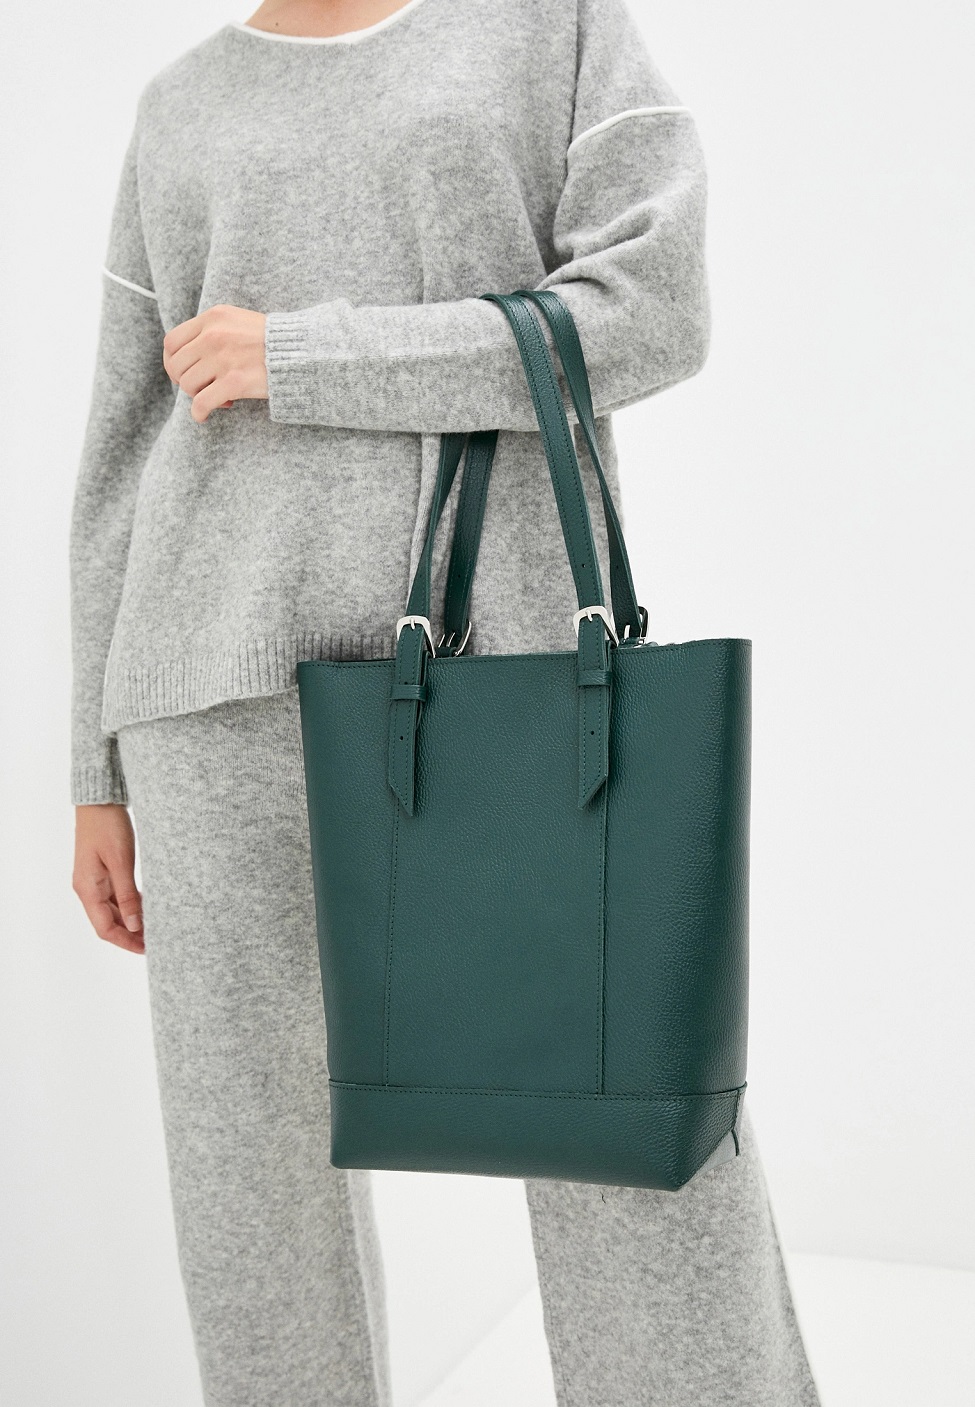 Женская сумка-шоппер из натуральной кожи зеленая A014 emerald grain ZIPPER